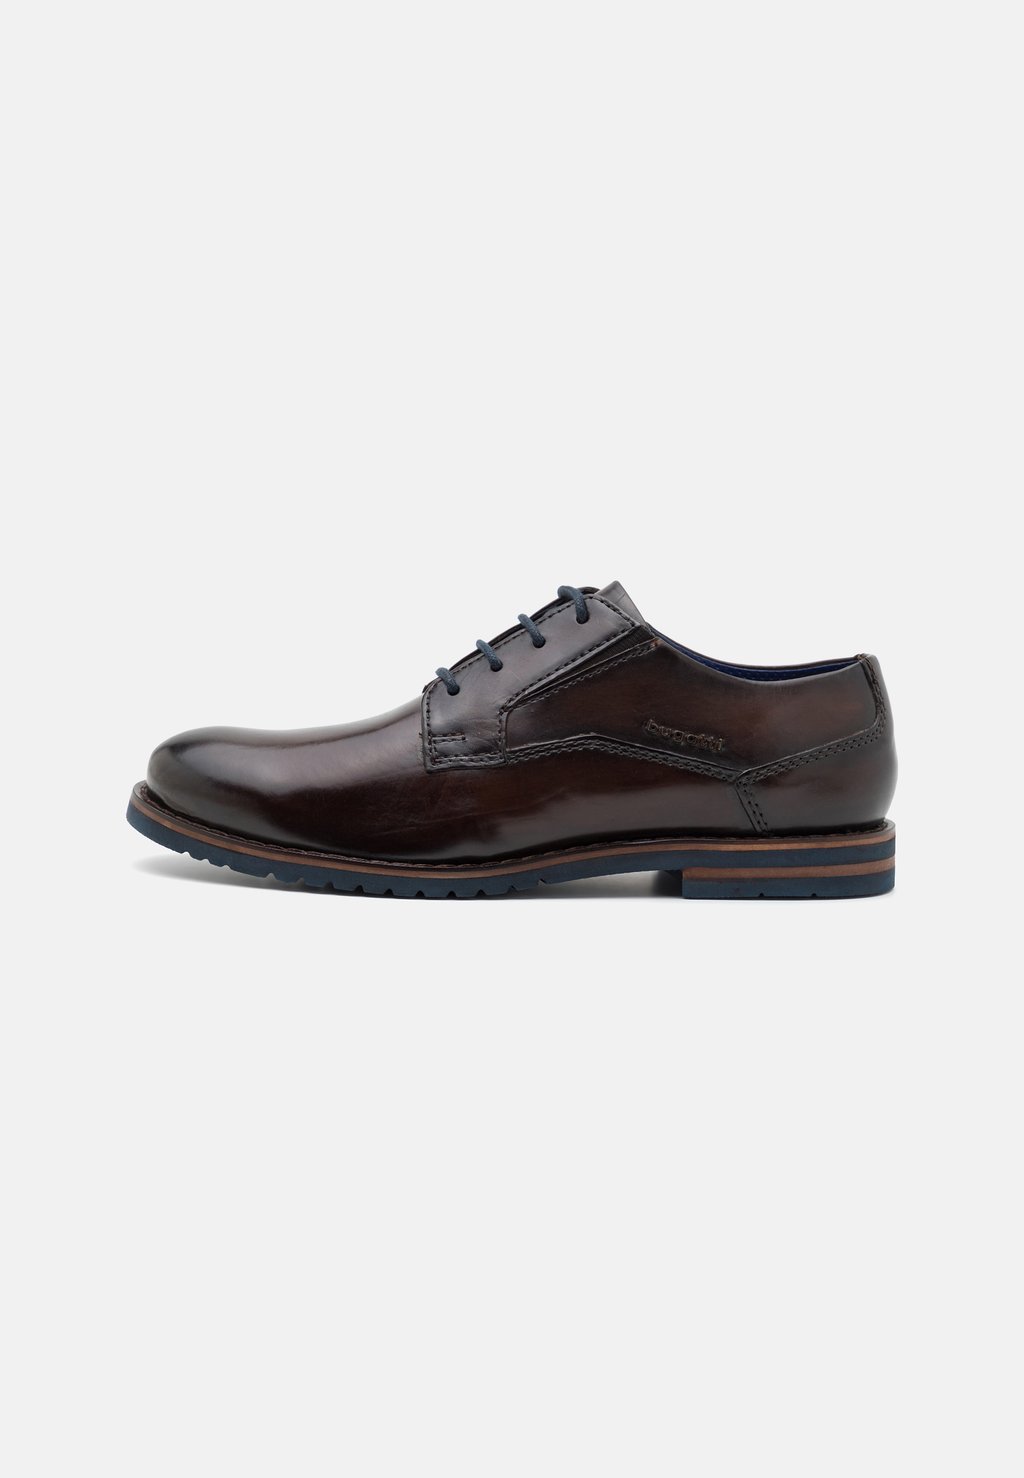 Элегантные туфли на шнуровке Caleo Exko bugatti, коричневый